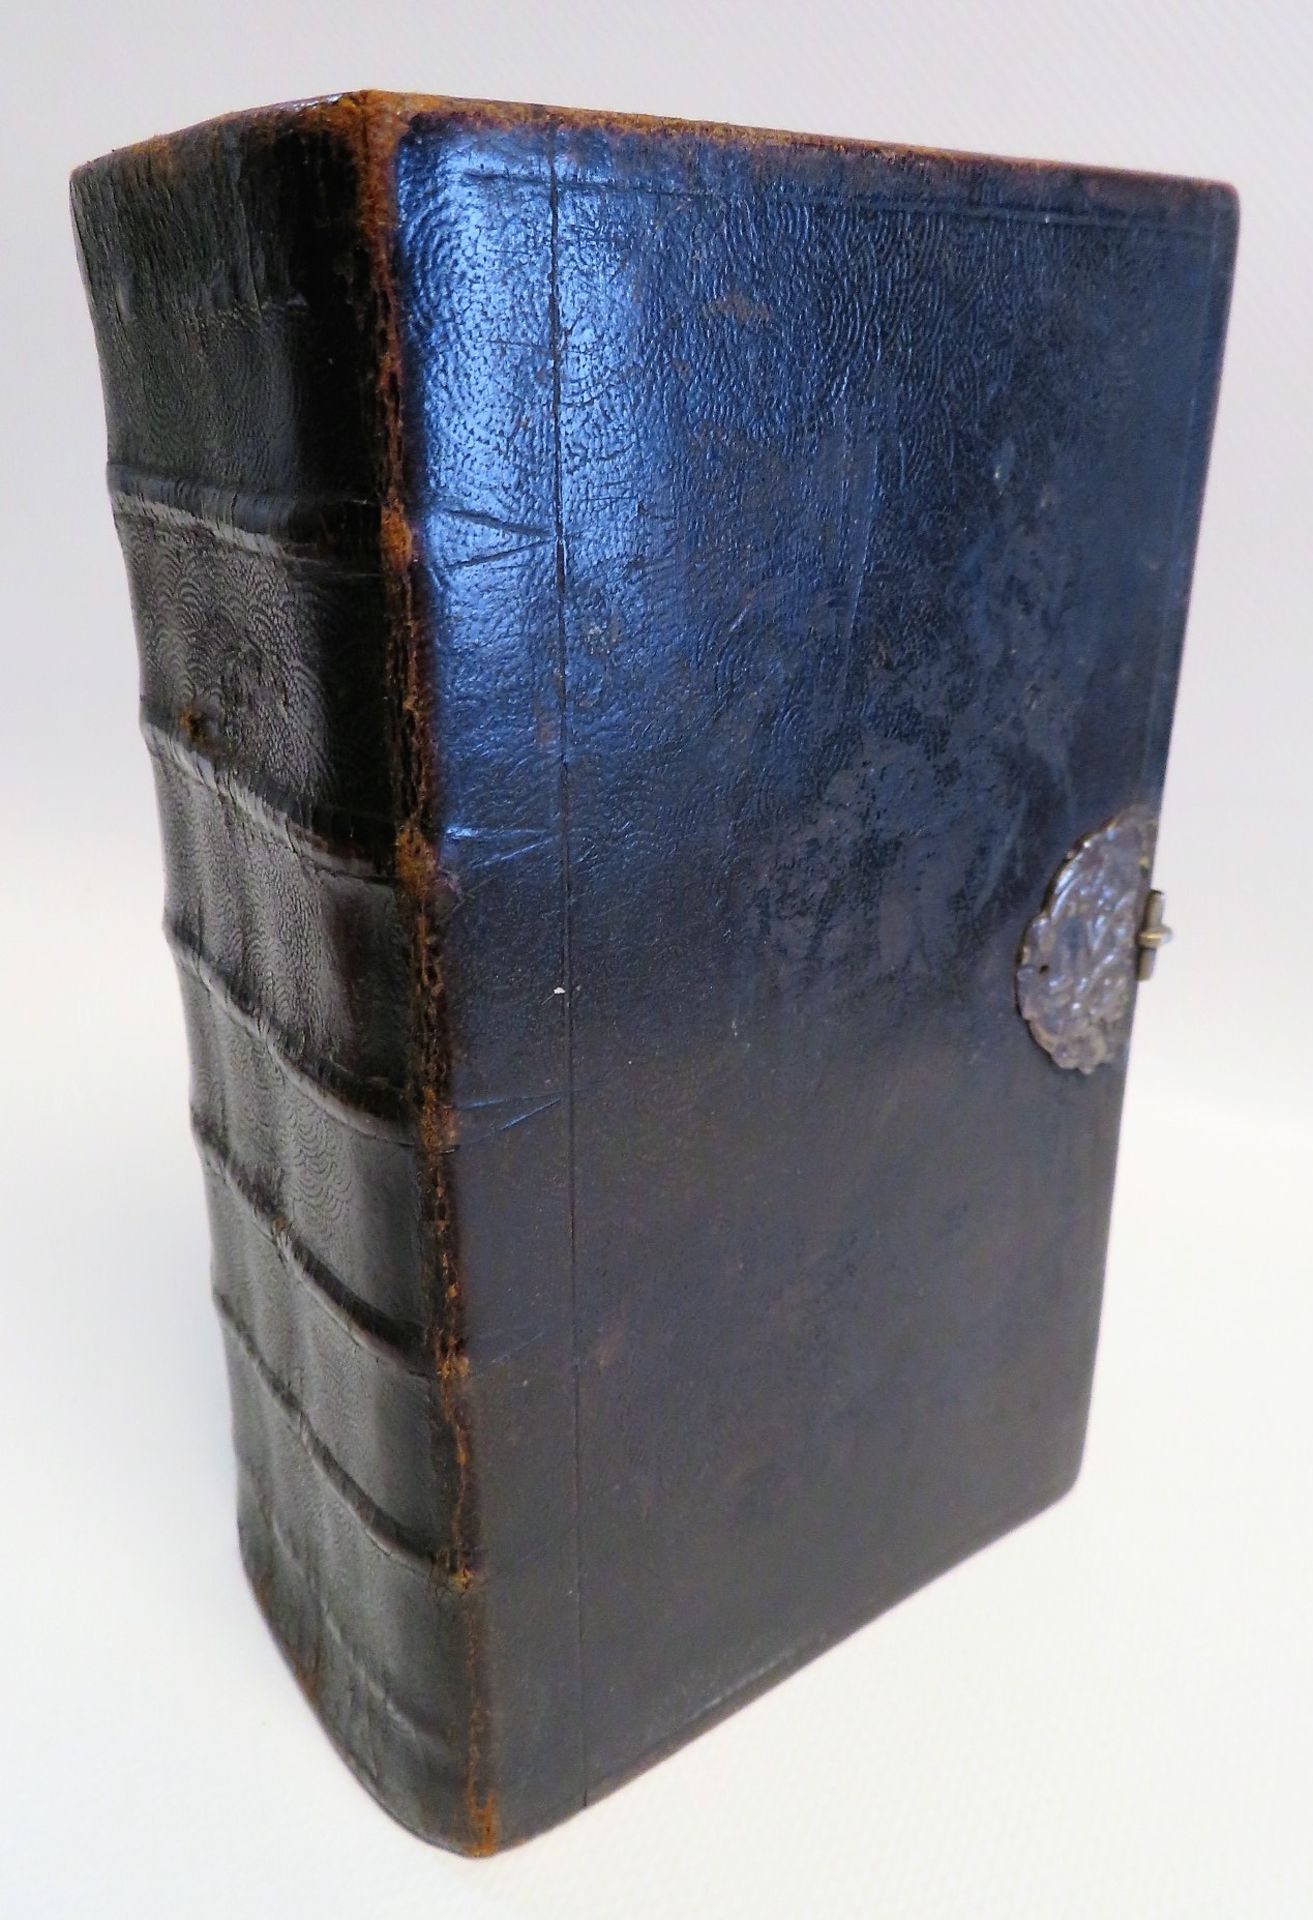 Bd., Neues Testament, Niederlande, 1862, Schloss Silber, Goldschnitt und Ledereinband, 17 x 10,5 x 